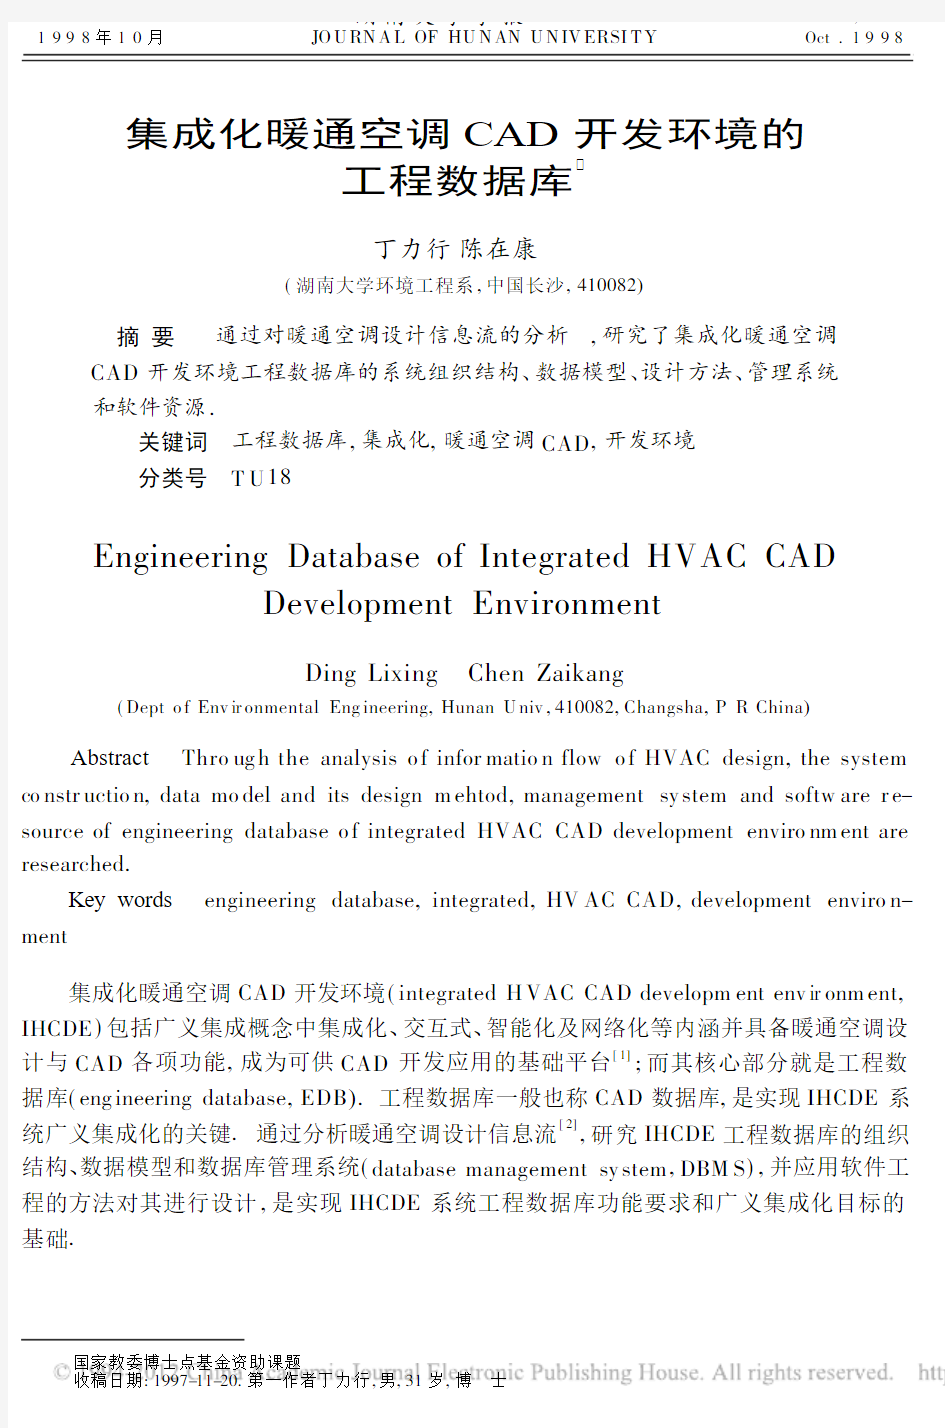 集成化暖通空调CAD开发环境的工程数据库